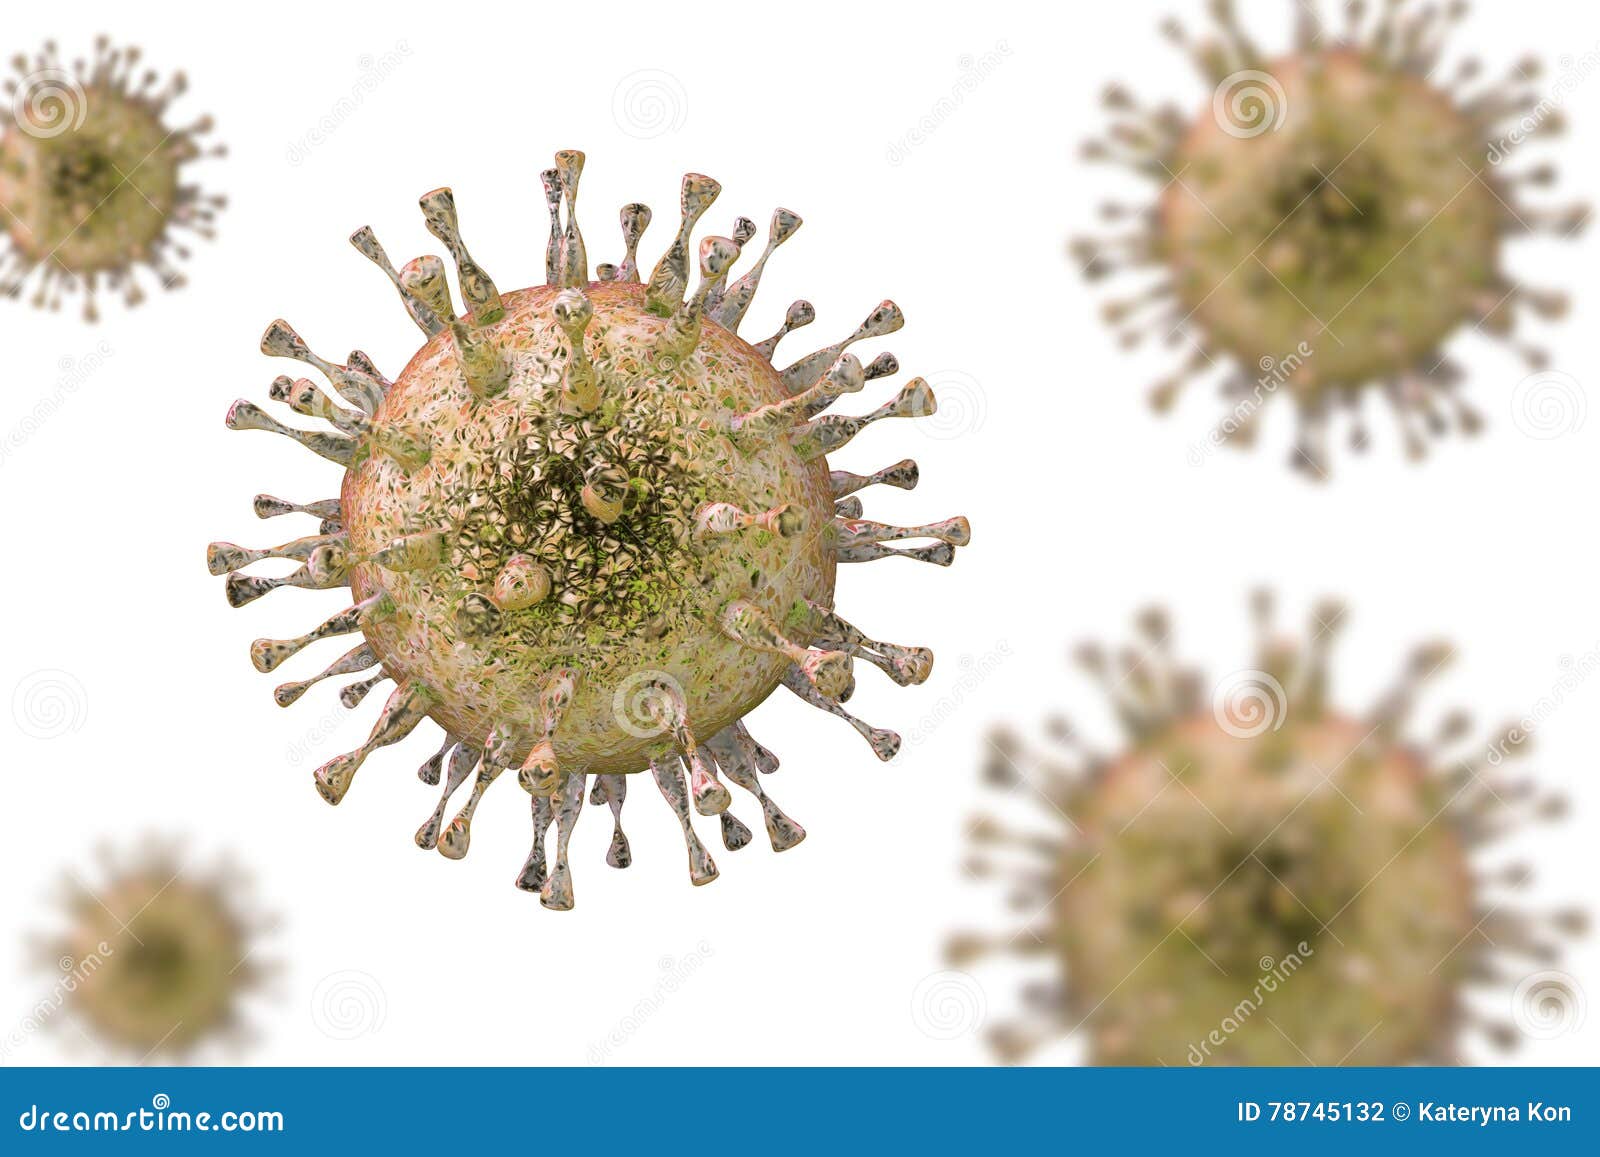 cytomegalovirus, dna virus from herpesviridae family